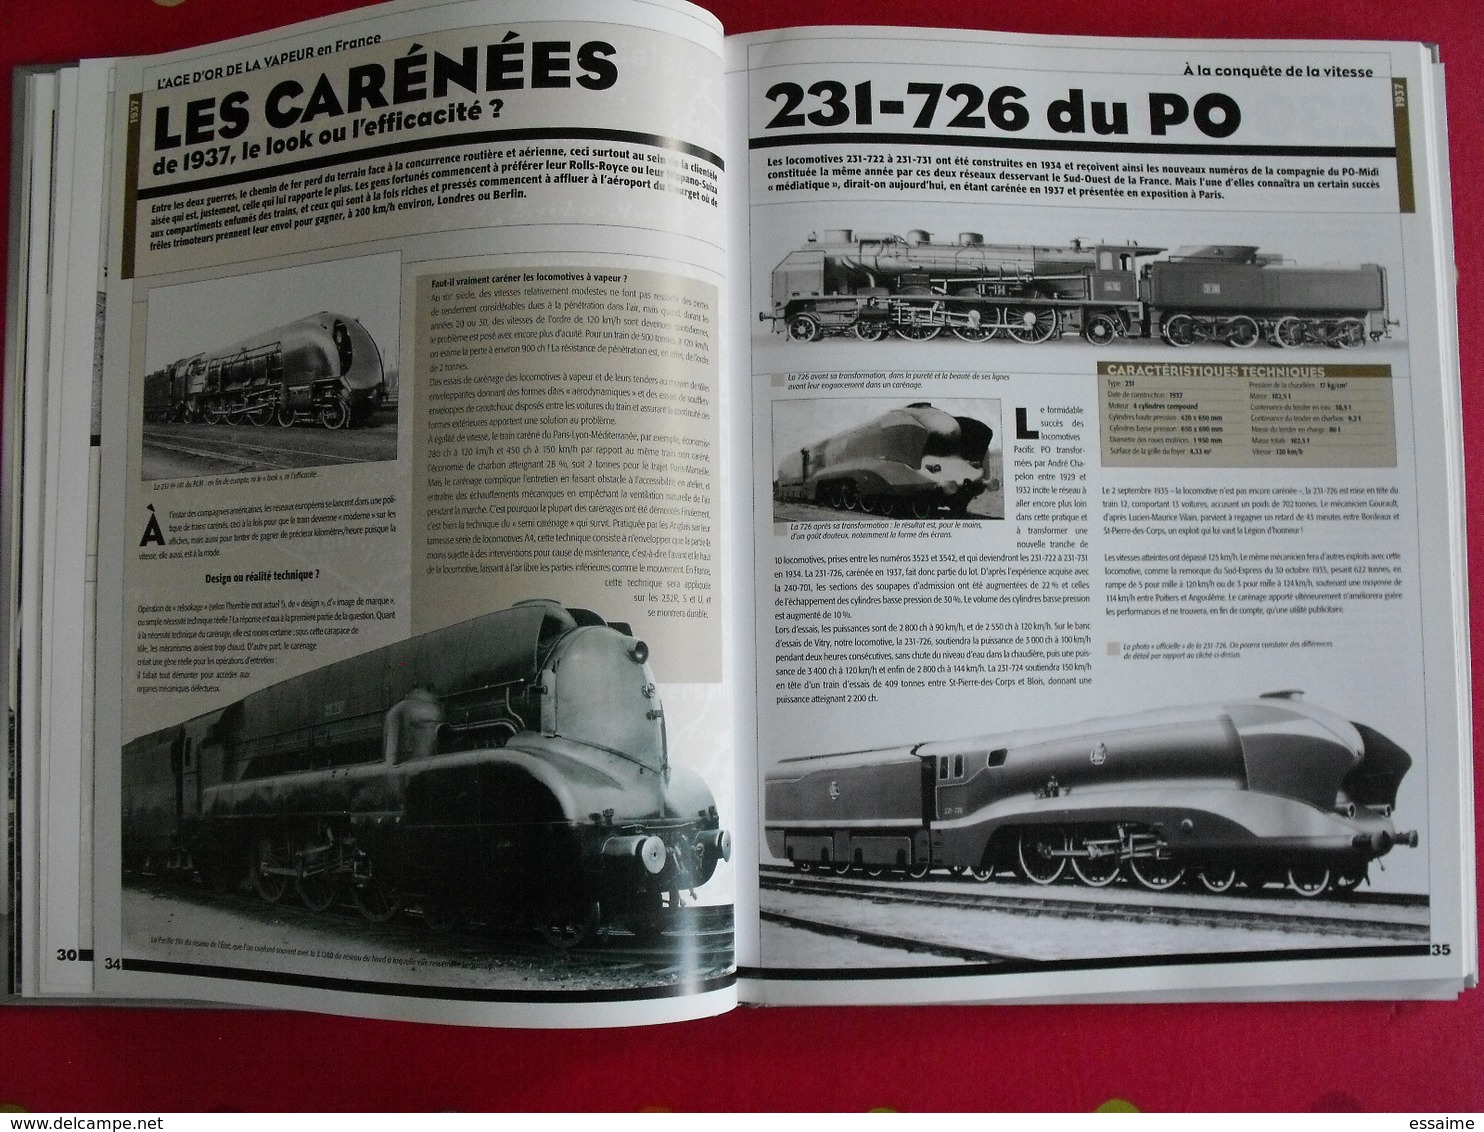 l'age d'or de la traction vapeur en France (1900-1950). Trains de légende. clive lamming. atlas 2005 + poster